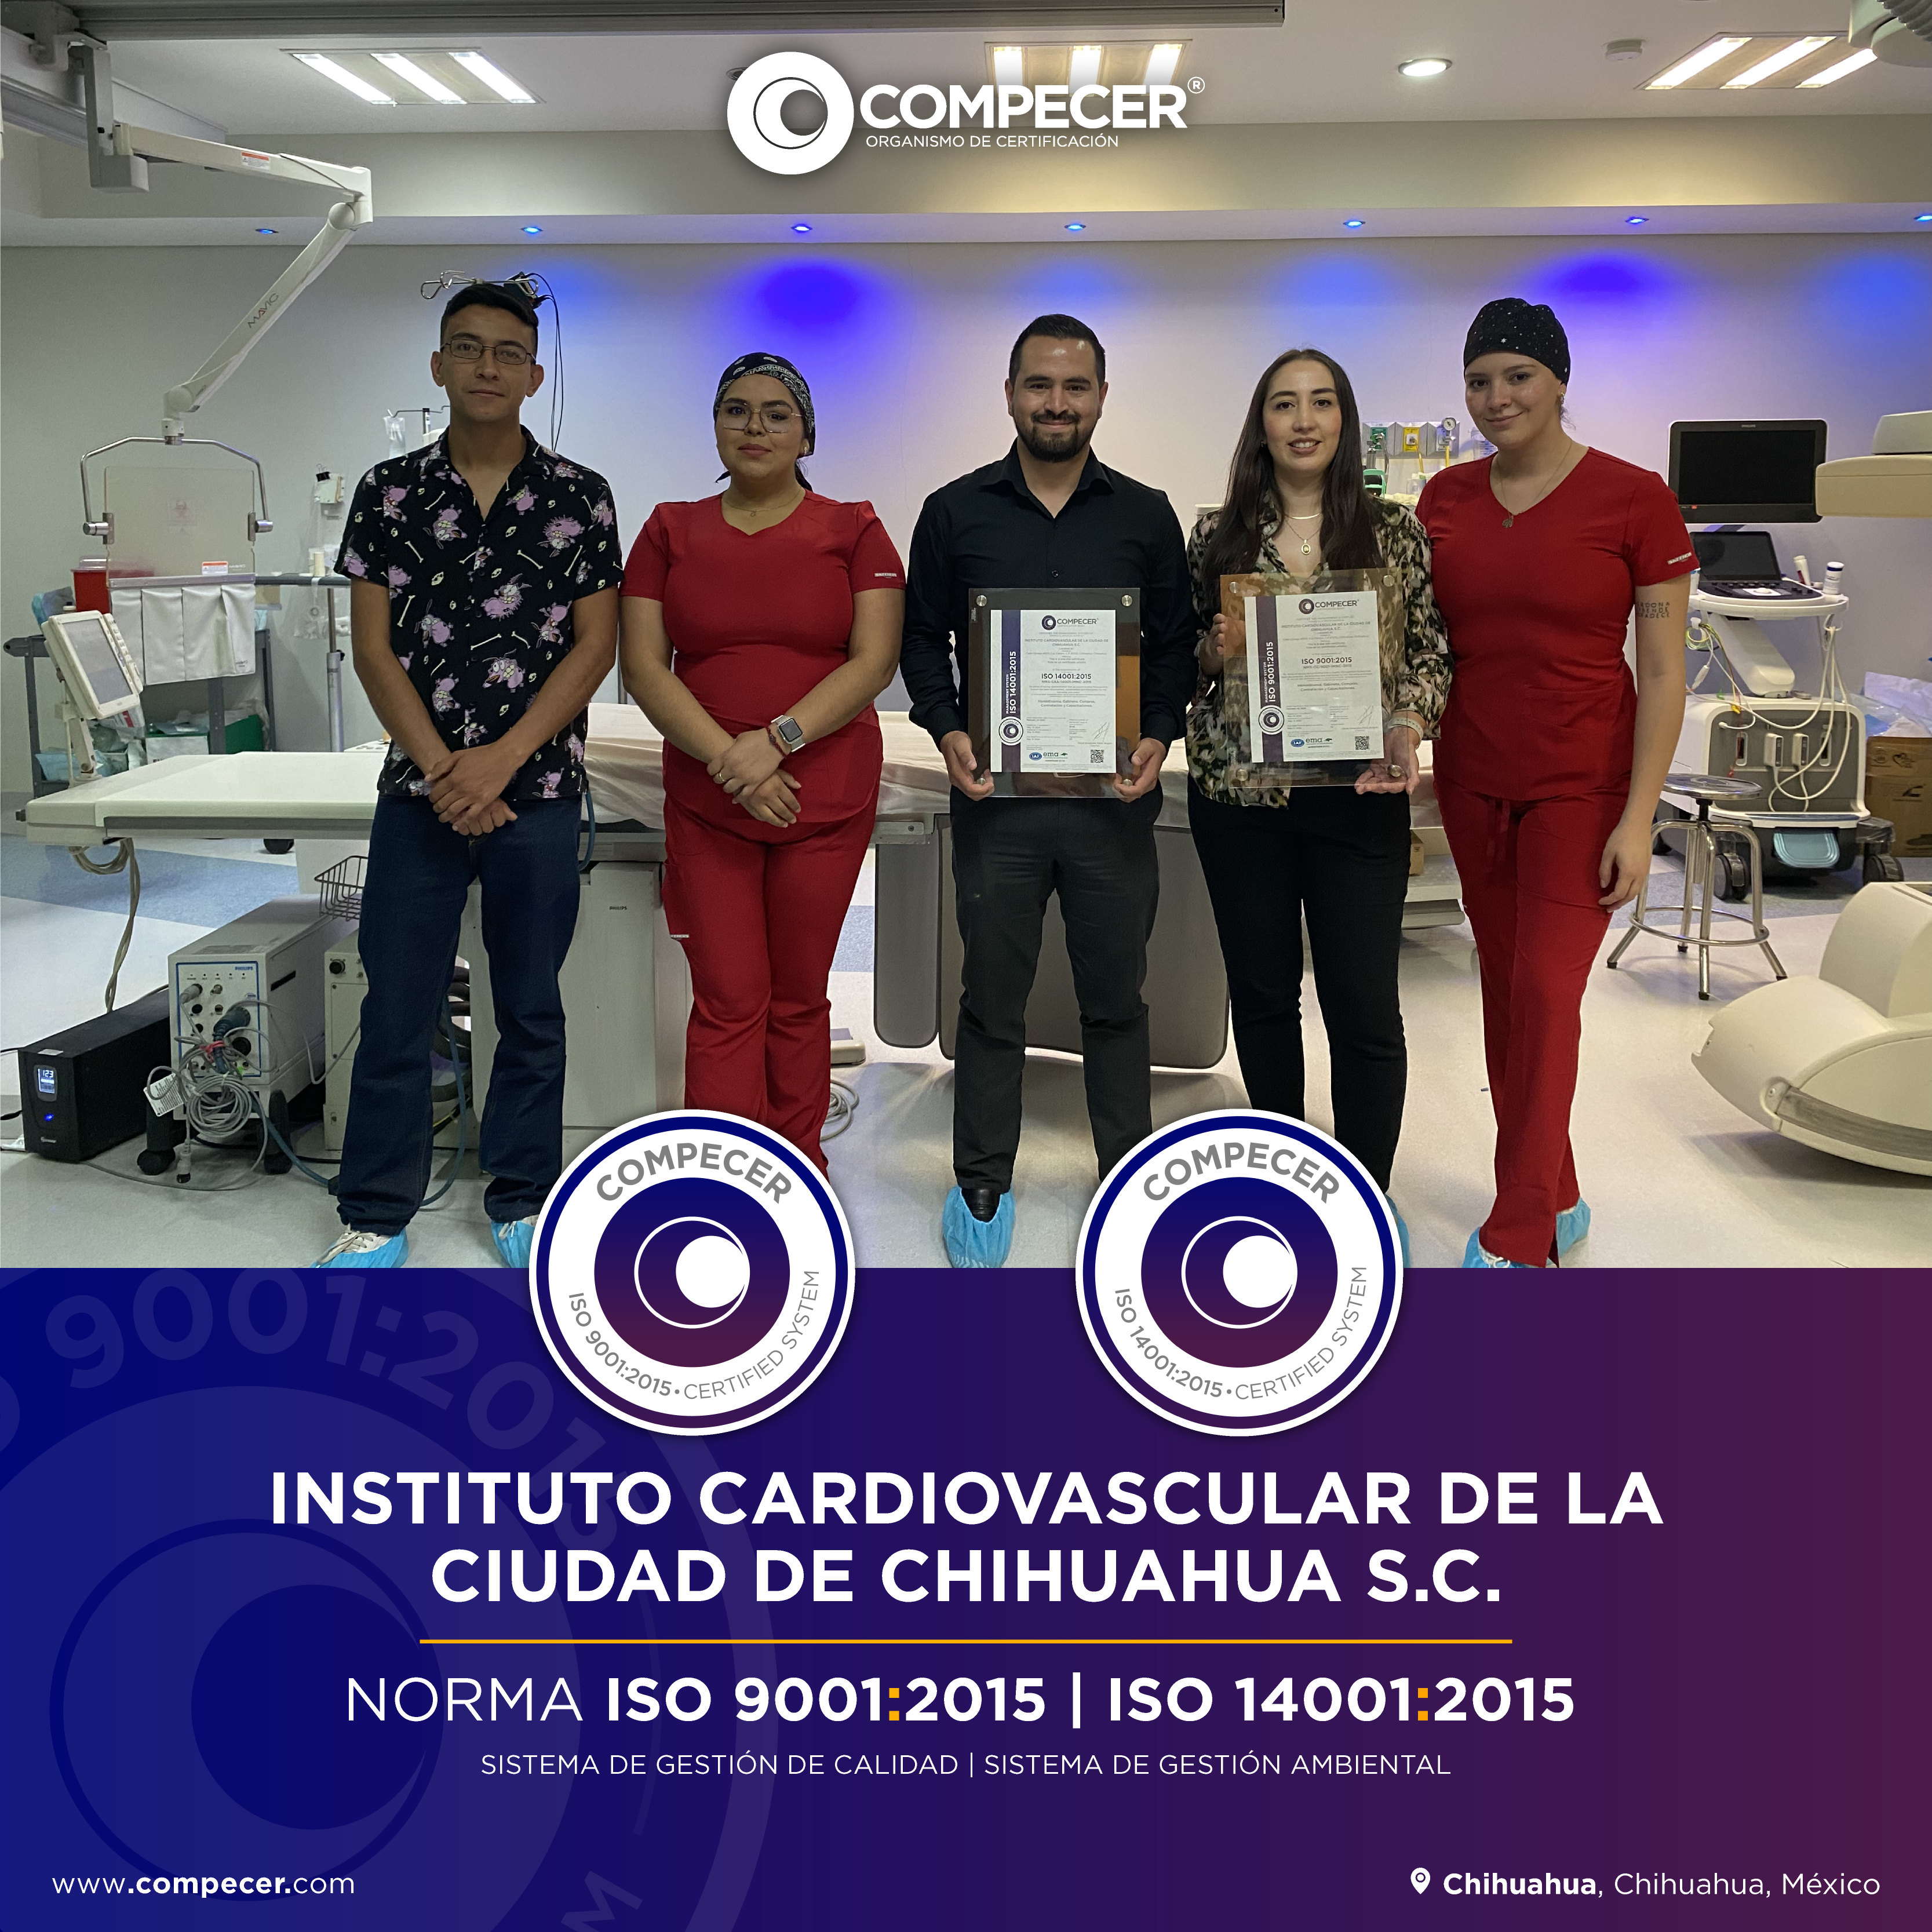 Instituto Cardiovascular de la Ciudad de Chihuahua S.C.